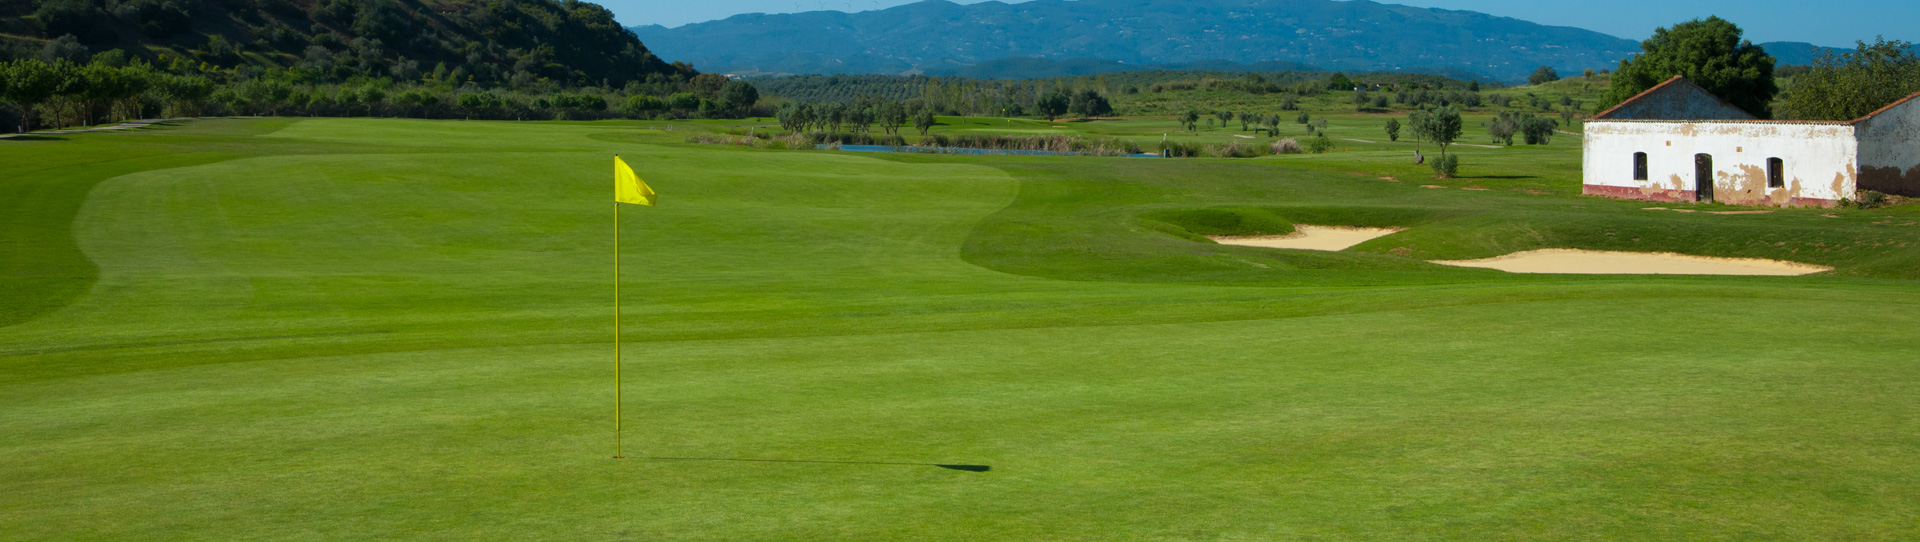 Portugal golf courses - Morgado Golf Course - Photo 2